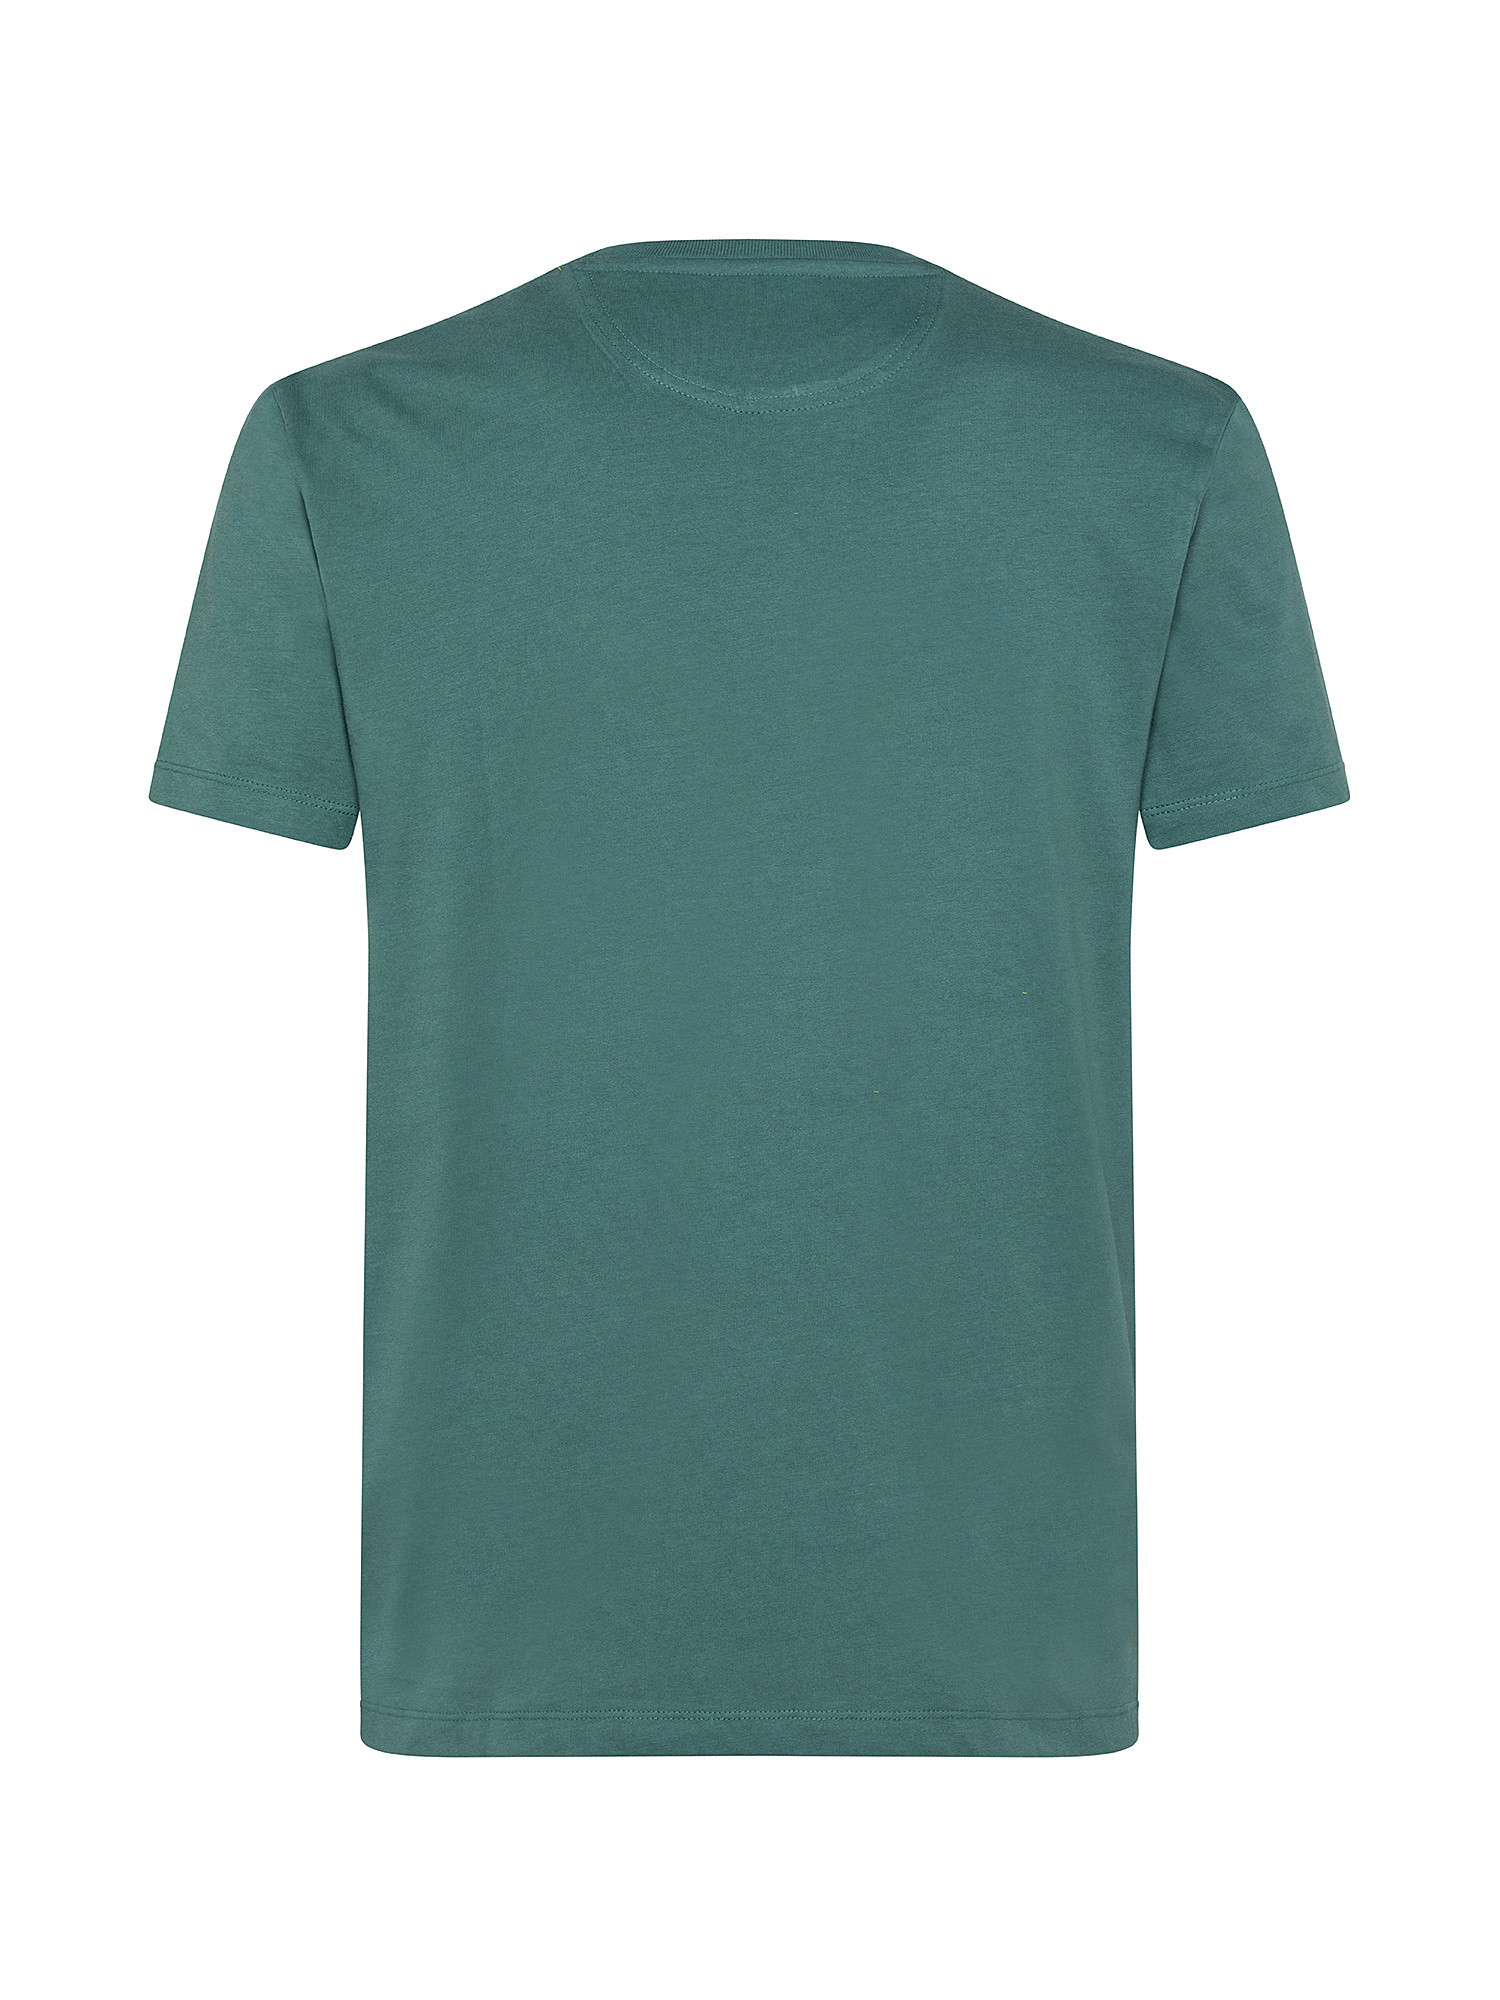 Dunstan River Men's T-Shirt, Green, large image number 1